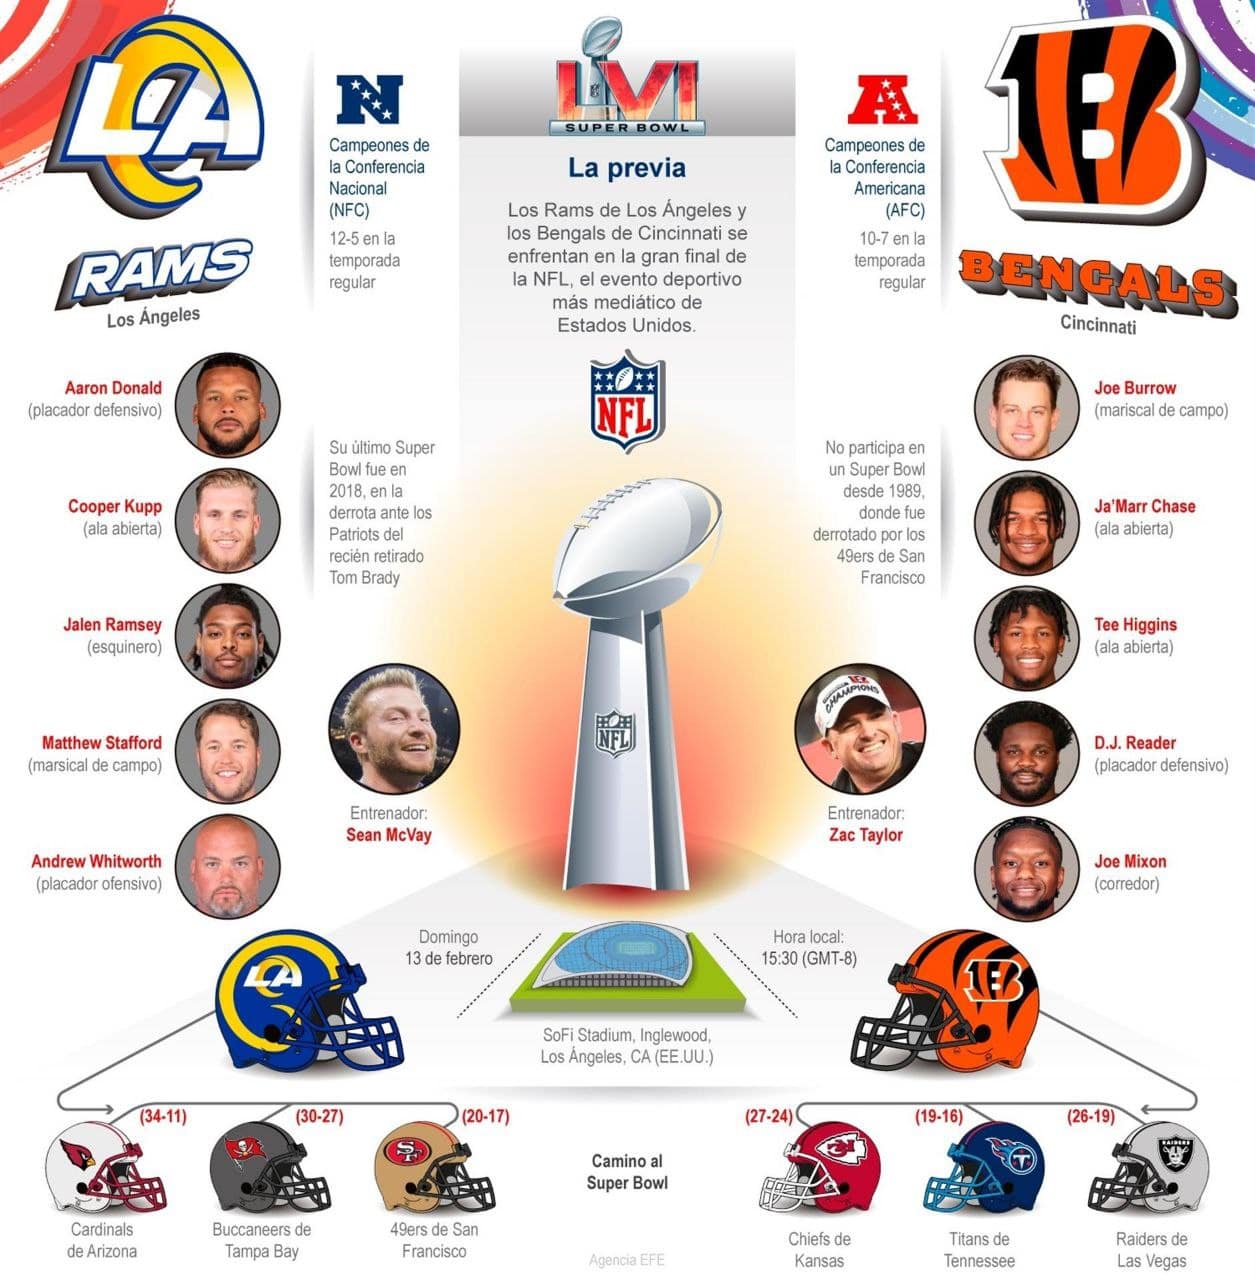 [Infografía] El Super Bowl LVI enfrenta a unos veteranos Rams contra unos jóvenes Bengals 1